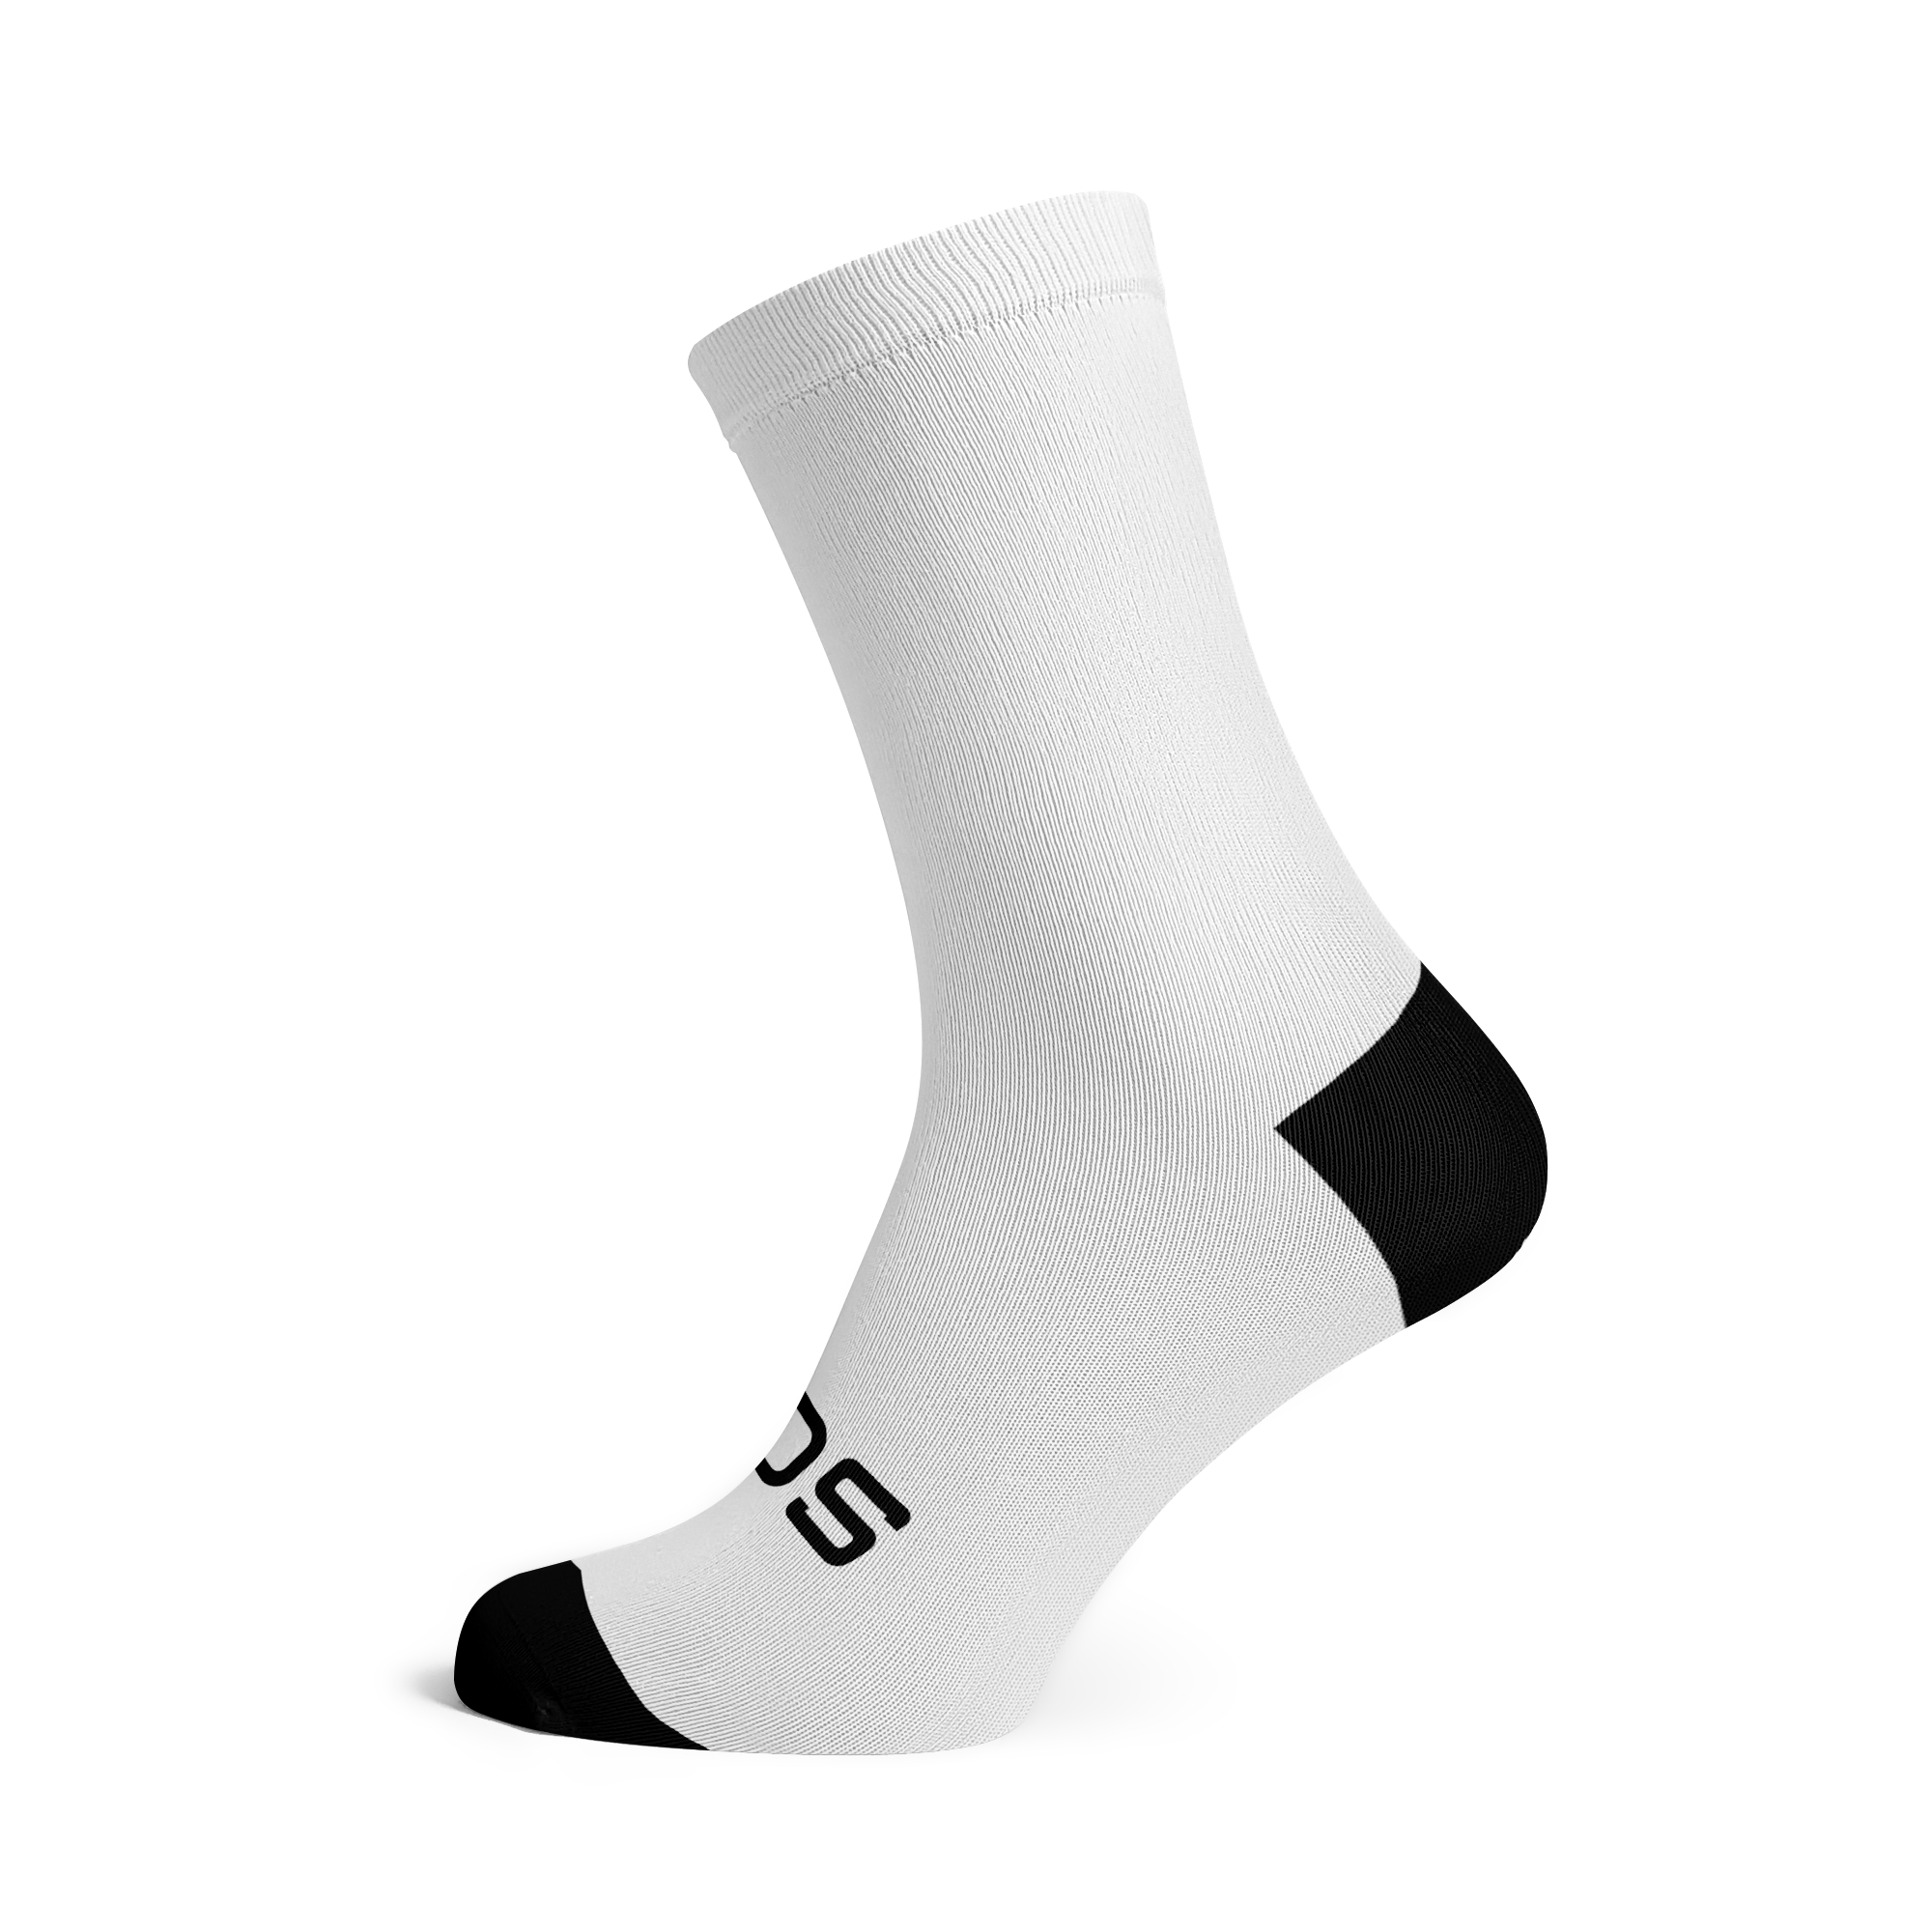 Solid White Socks